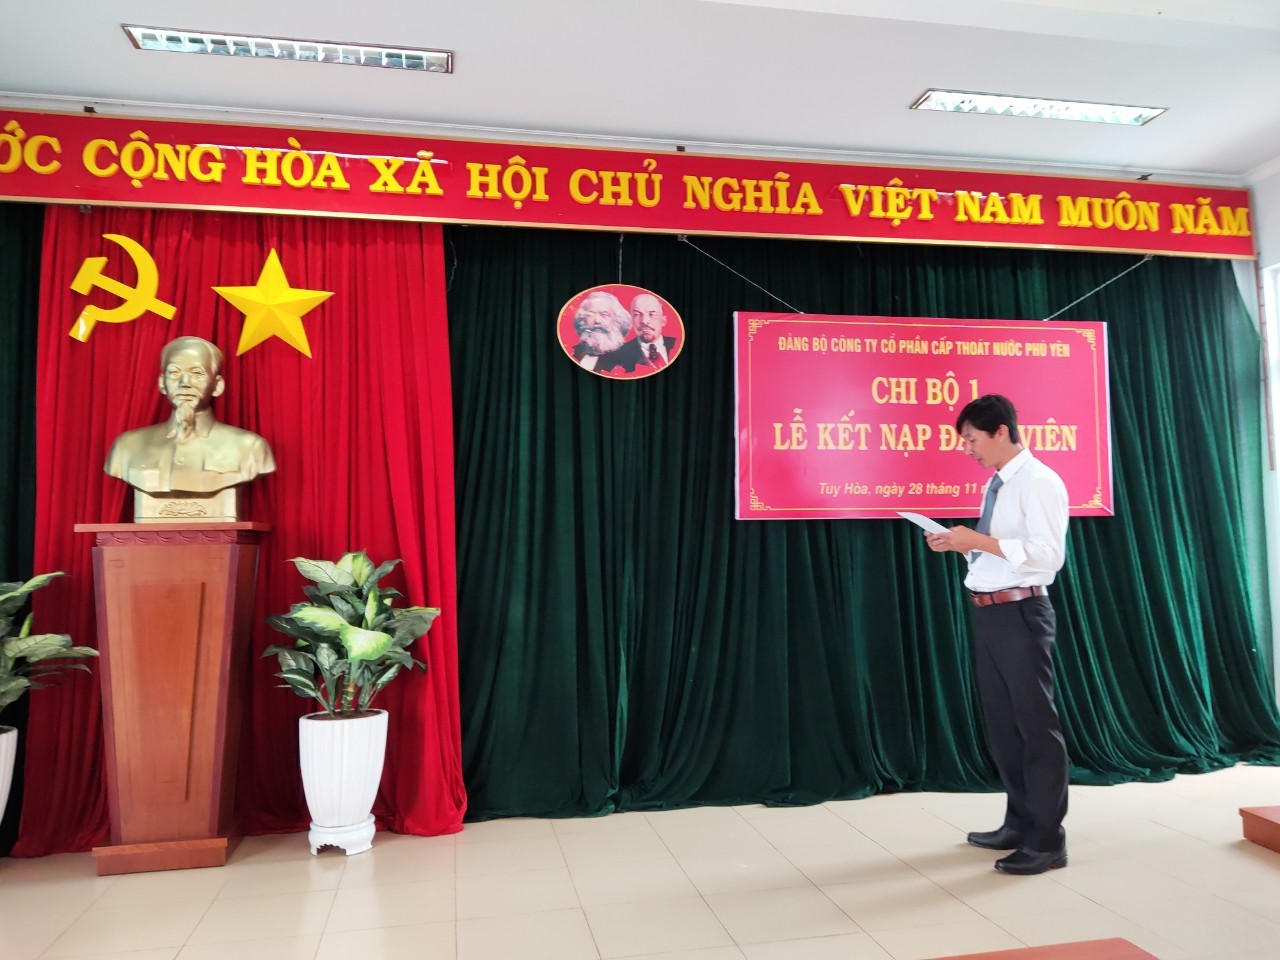 Đảng viên mới Nguyễn Hùng Đoan Phát biểu tuyên thệ tại Lễ kết nạp